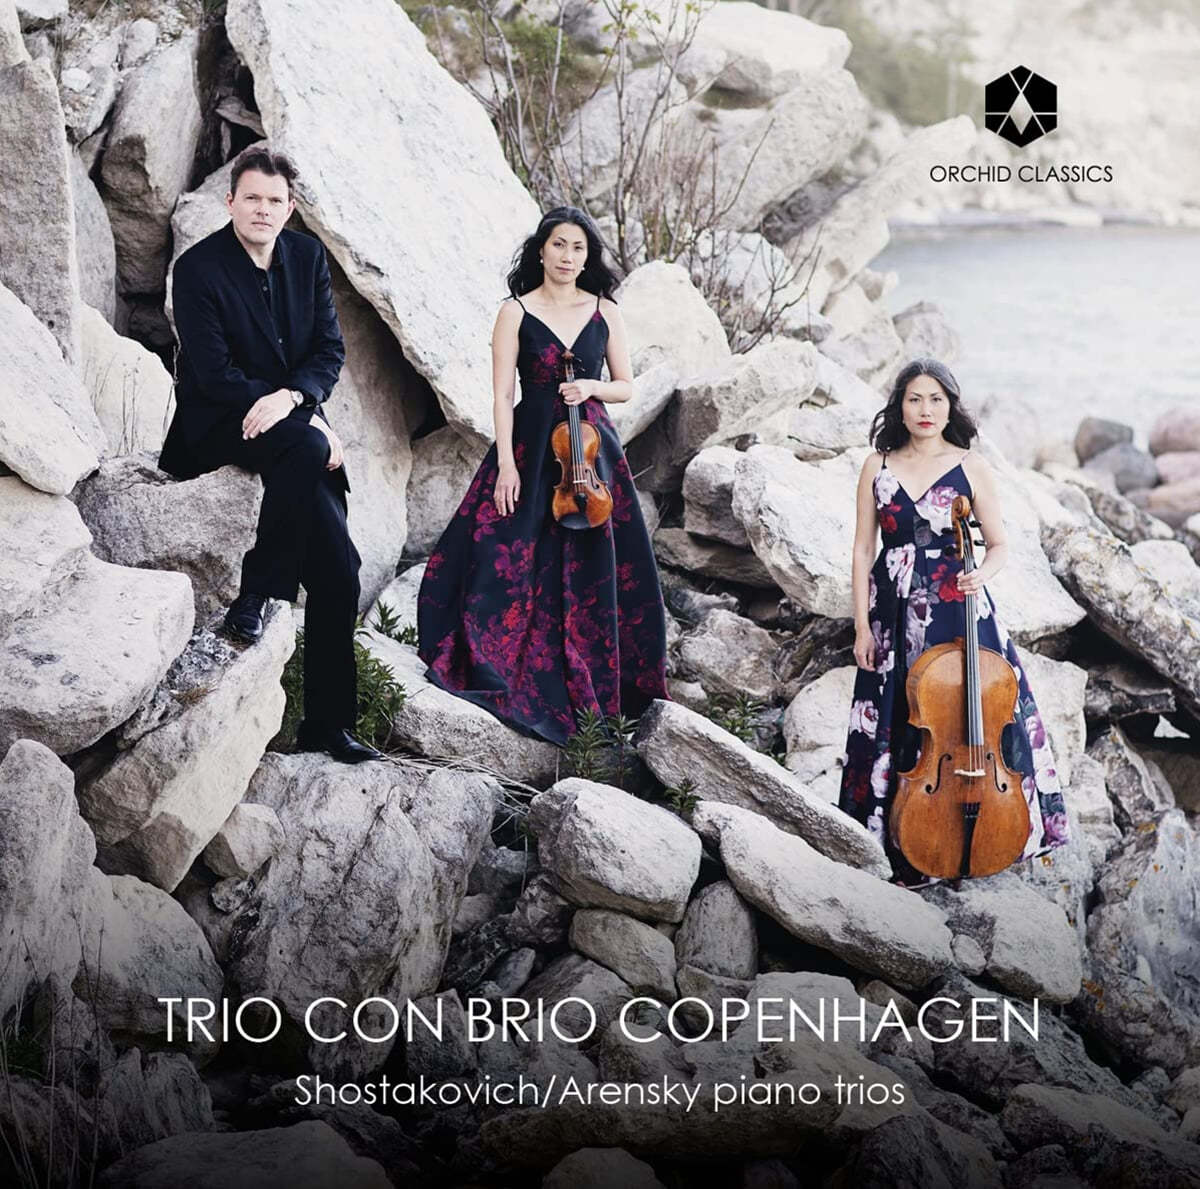 Trio Con Brio Copenhagen 쇼스타코비치 / 아렌스키: 피아노 삼중주 (Shostakovich: Piano Trios Op.8, Op.67 / Arensky: Piano Trio Op.32) 